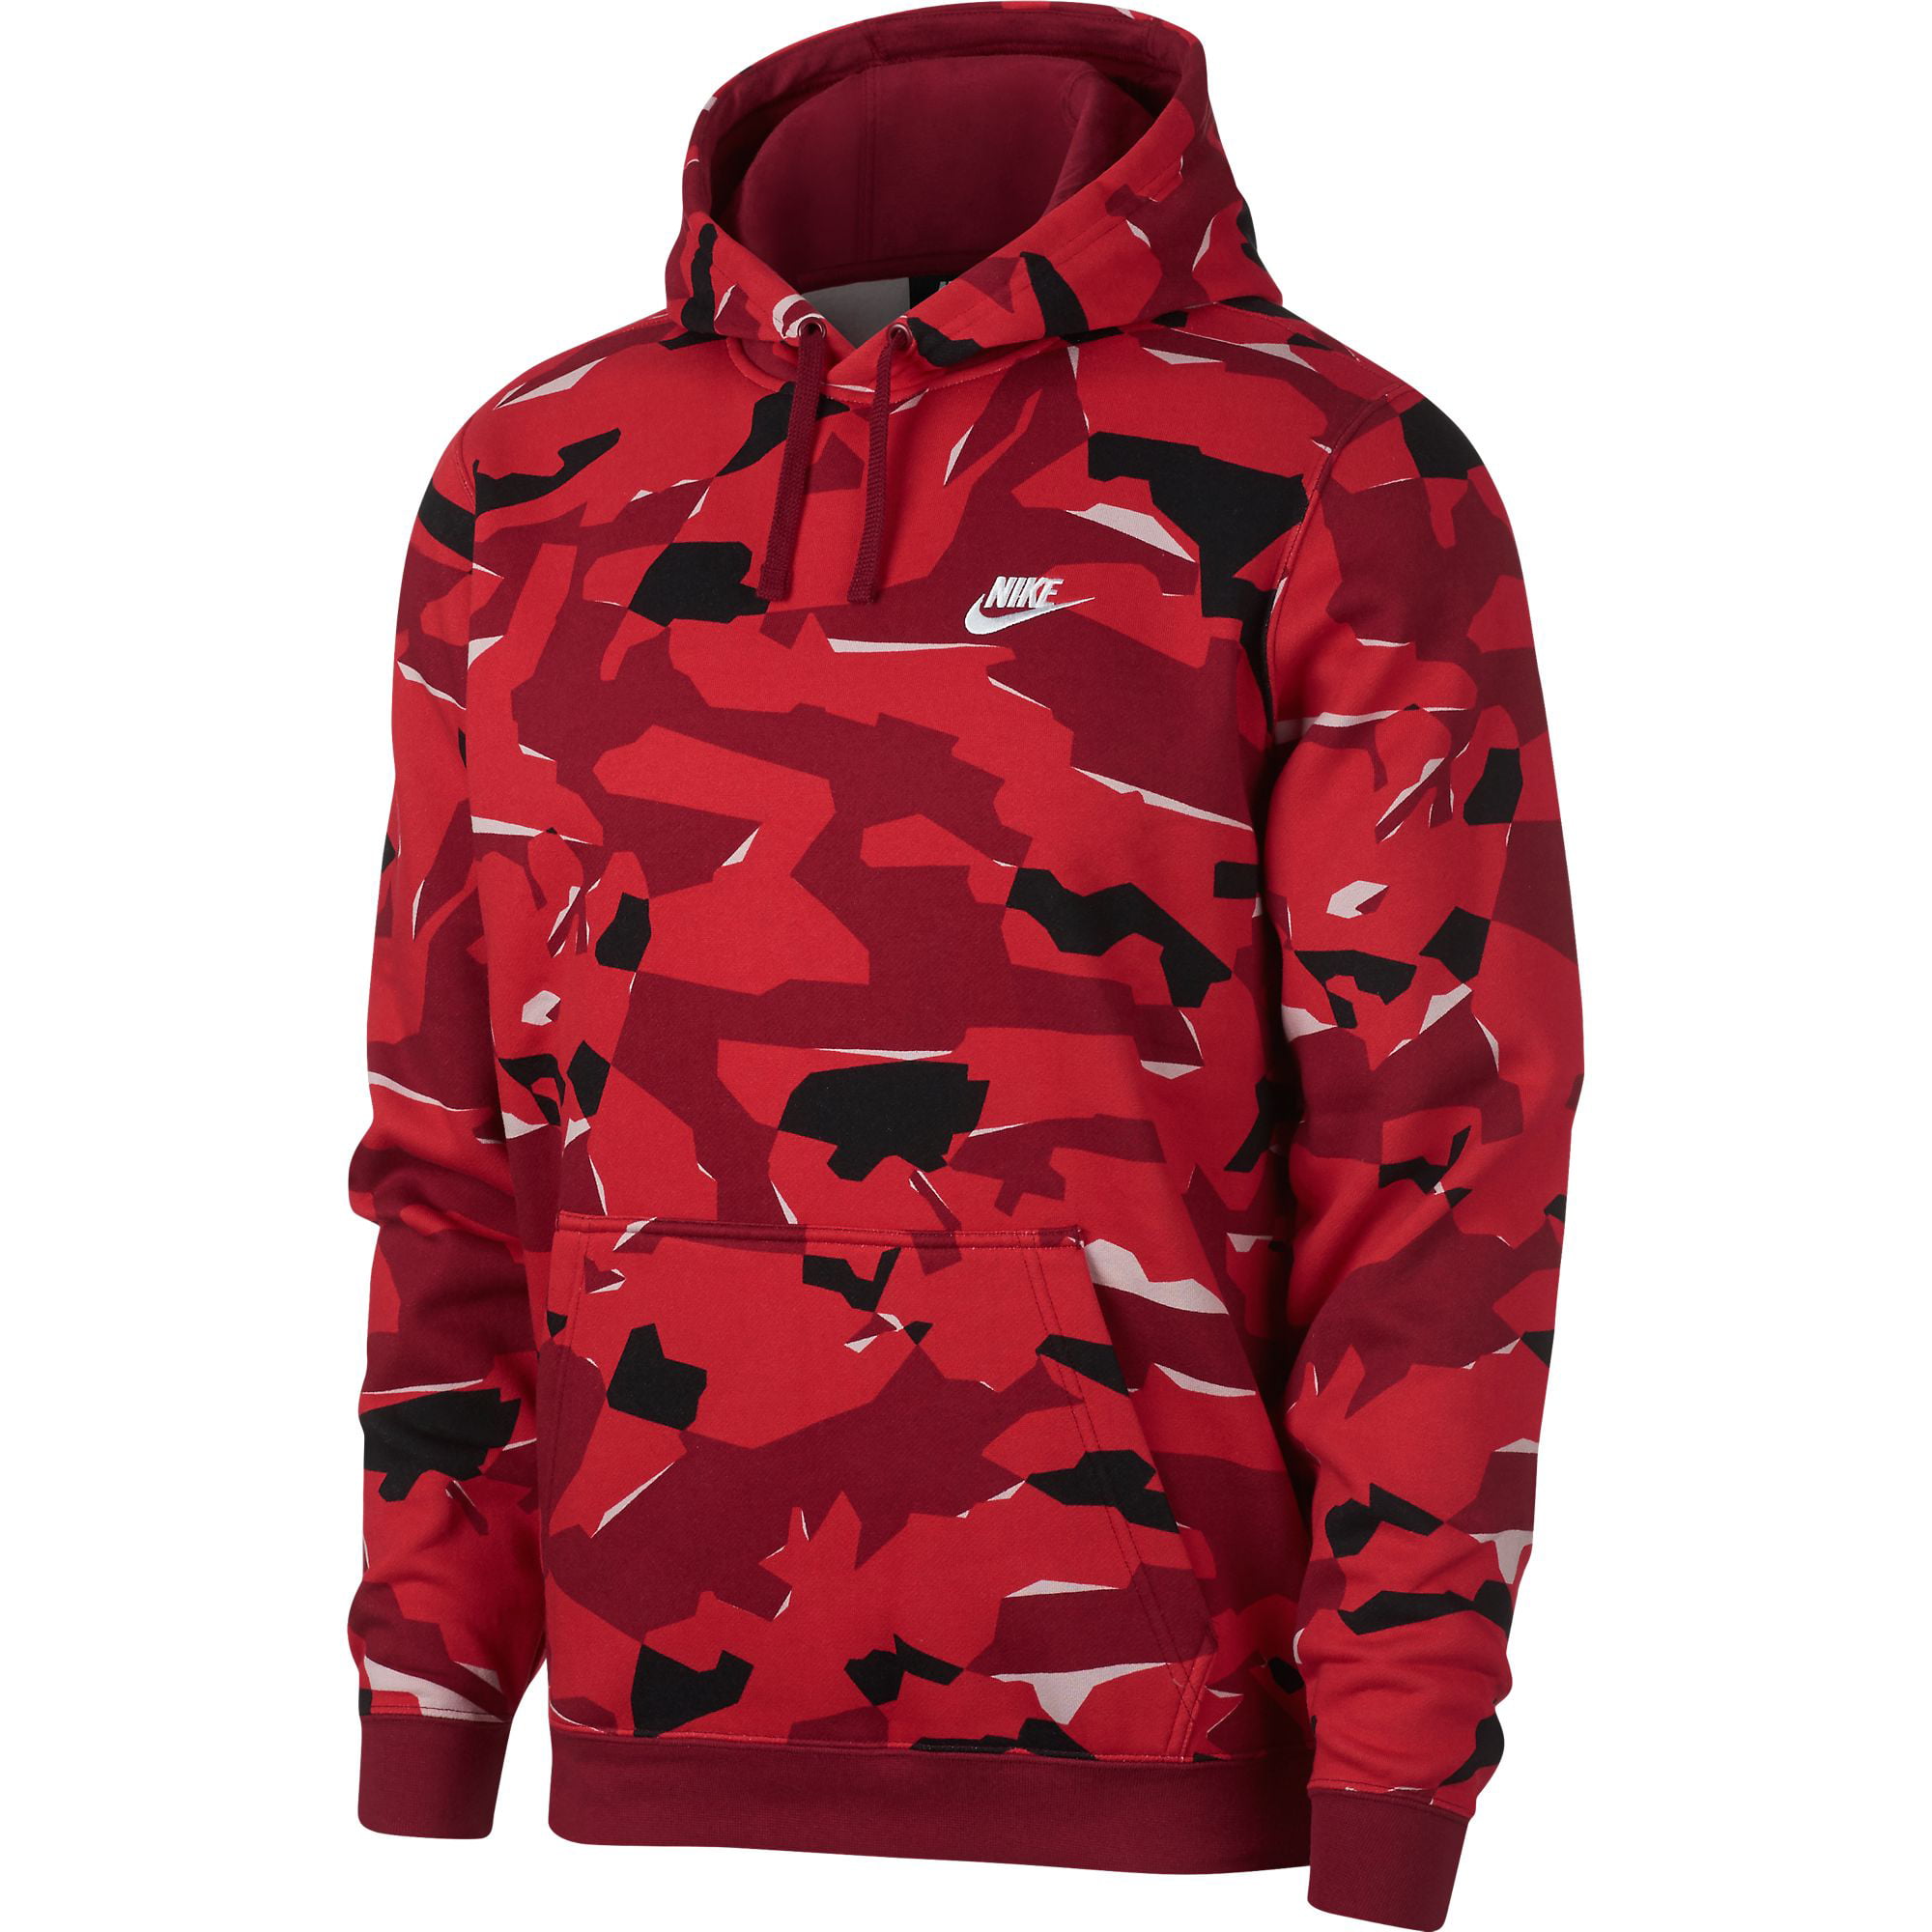 Nike Club Men's Pullover Red Camo ar1313-677 - Walmart.com